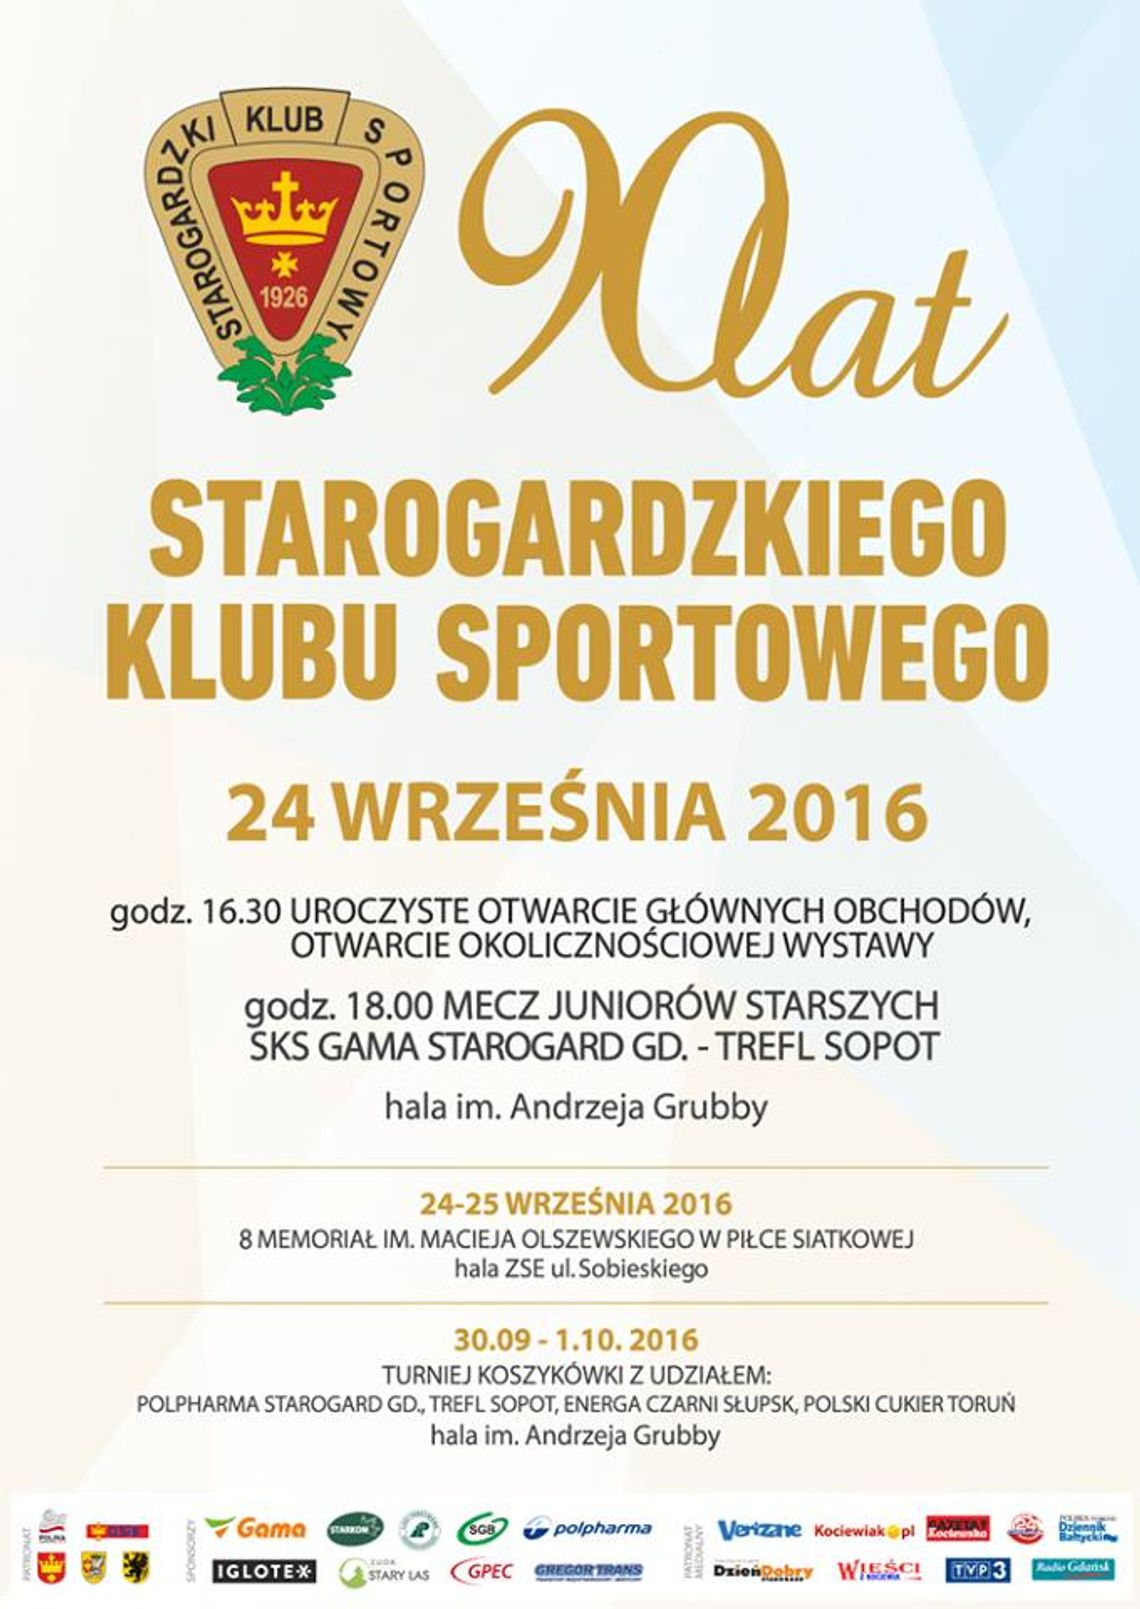 Wyjątkowy jubileusz SKS-u! Starogardzki Klub Sportowy świętuje swoje 90lecie 